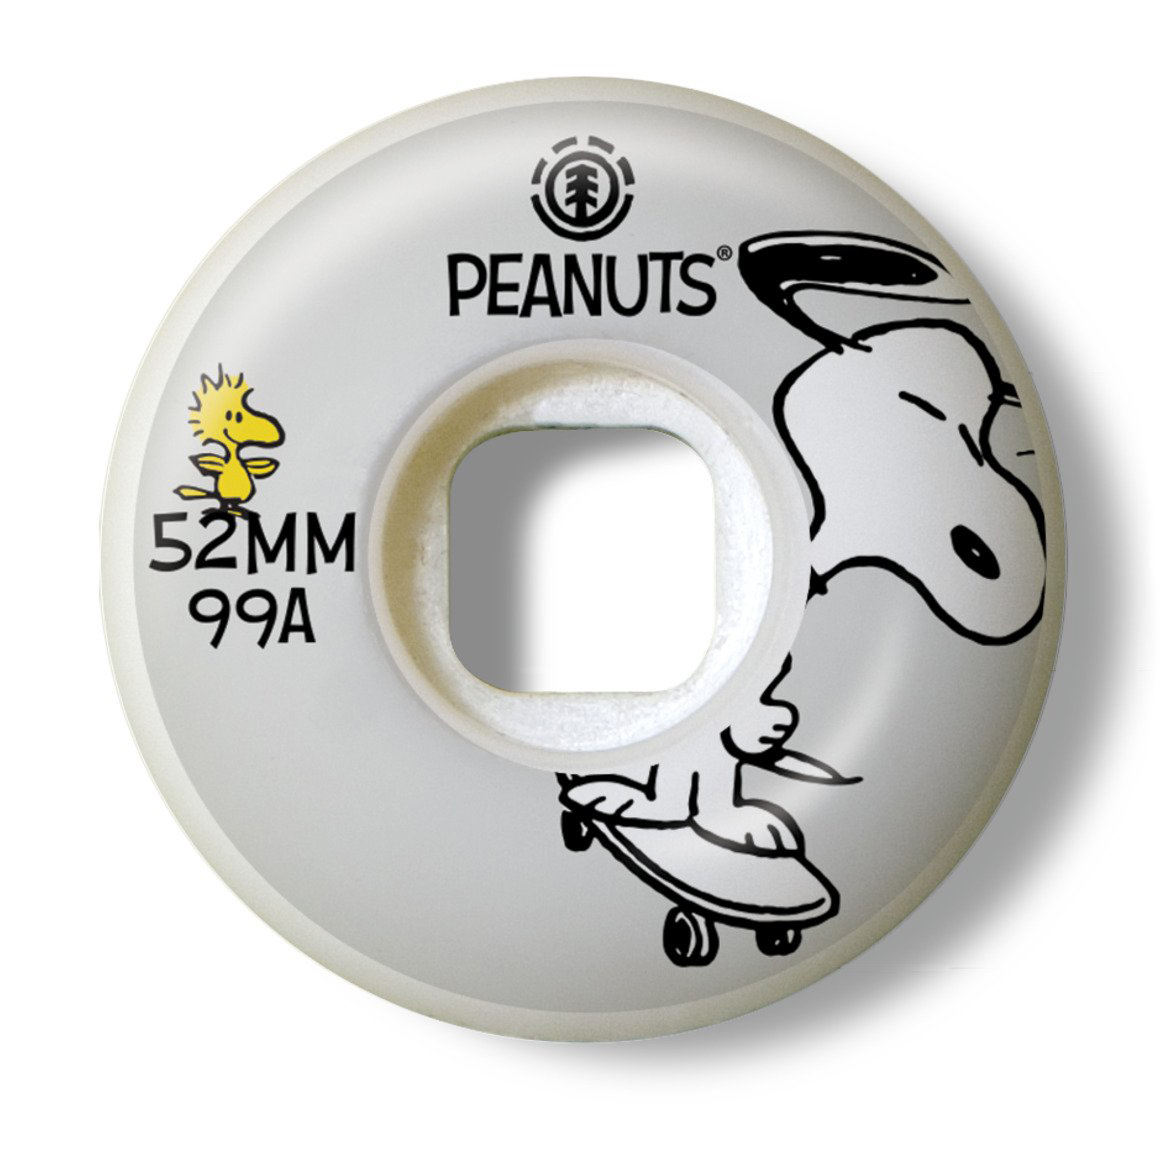 52 сквад. Element Peanuts Squad 52mm. Колеса element. Колеса element 52 mm trip. Element penuts скейт комплект.